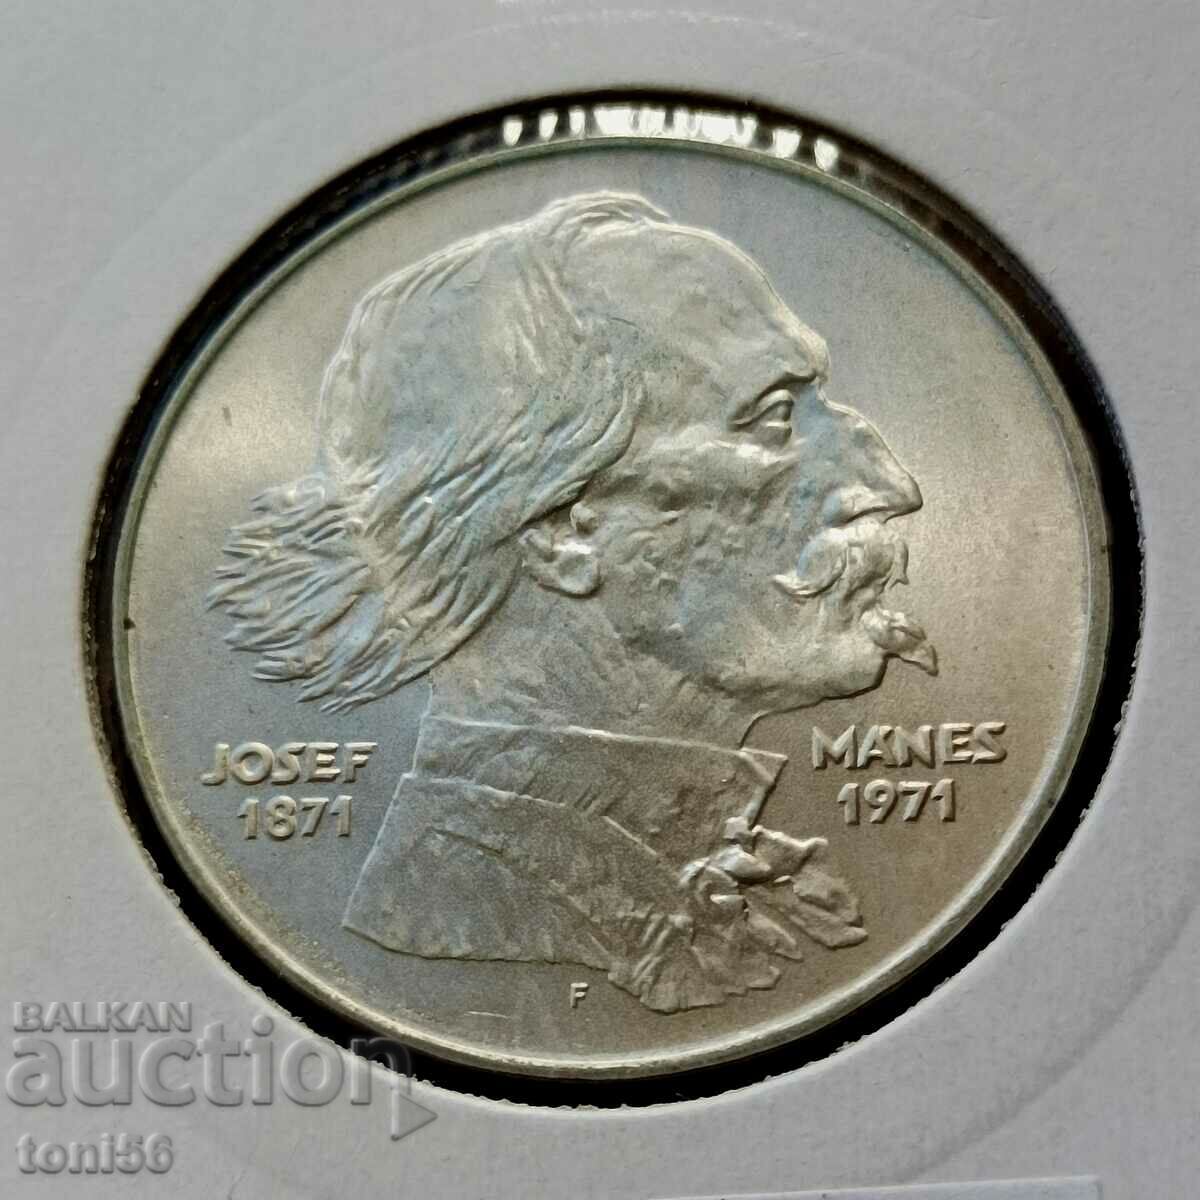 Czechoslovakia 100 kroner 1971 UNC - Silver